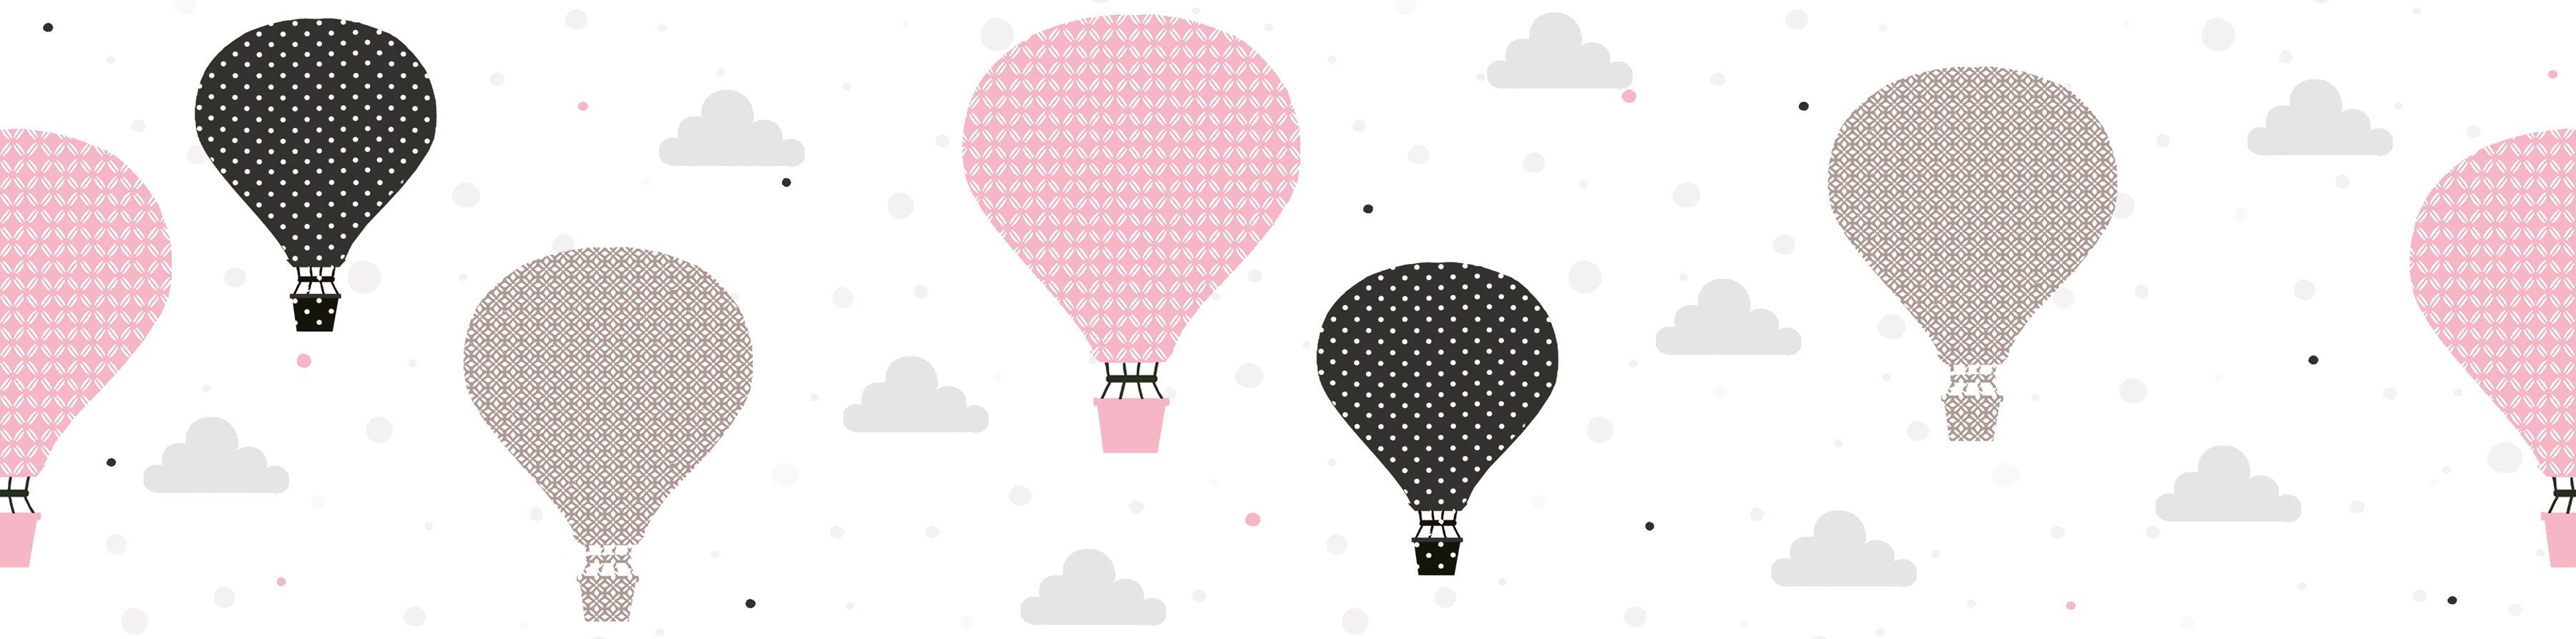 A.S. Heißluftballon Cloud Bordüre Kinderzimmer Tapete Schwarz Bordüre Balloons, Grau Création Rosa glatt,